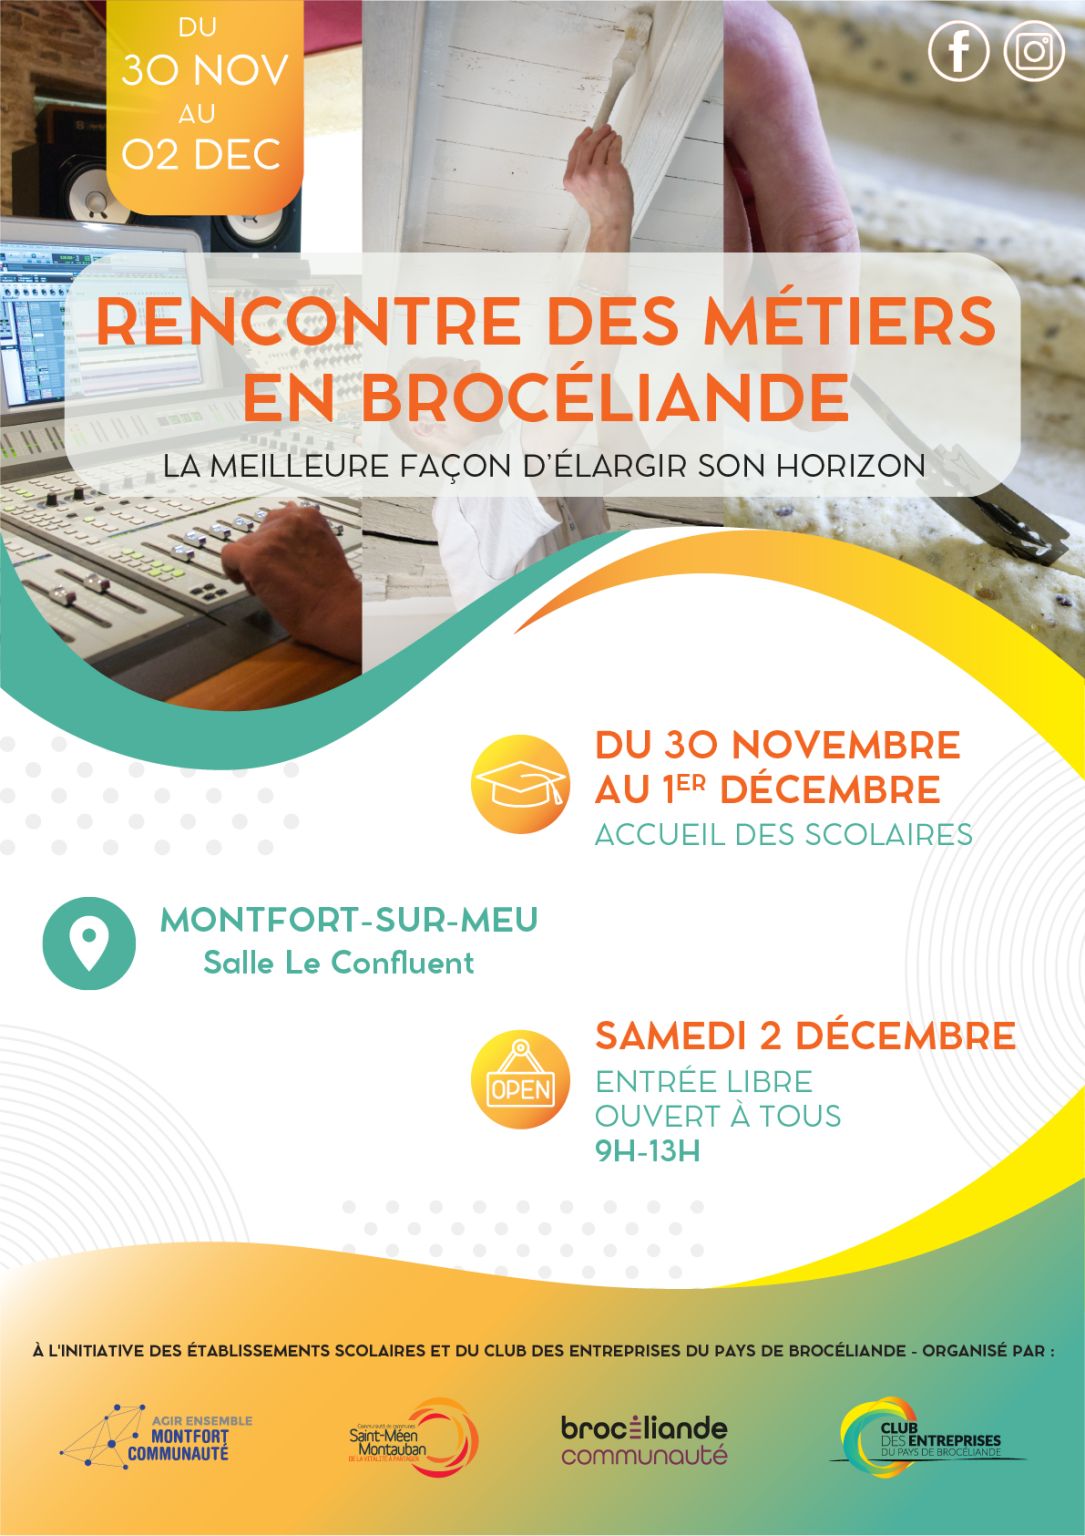 Participez à la Rencontre des métiers en Brocéliande !